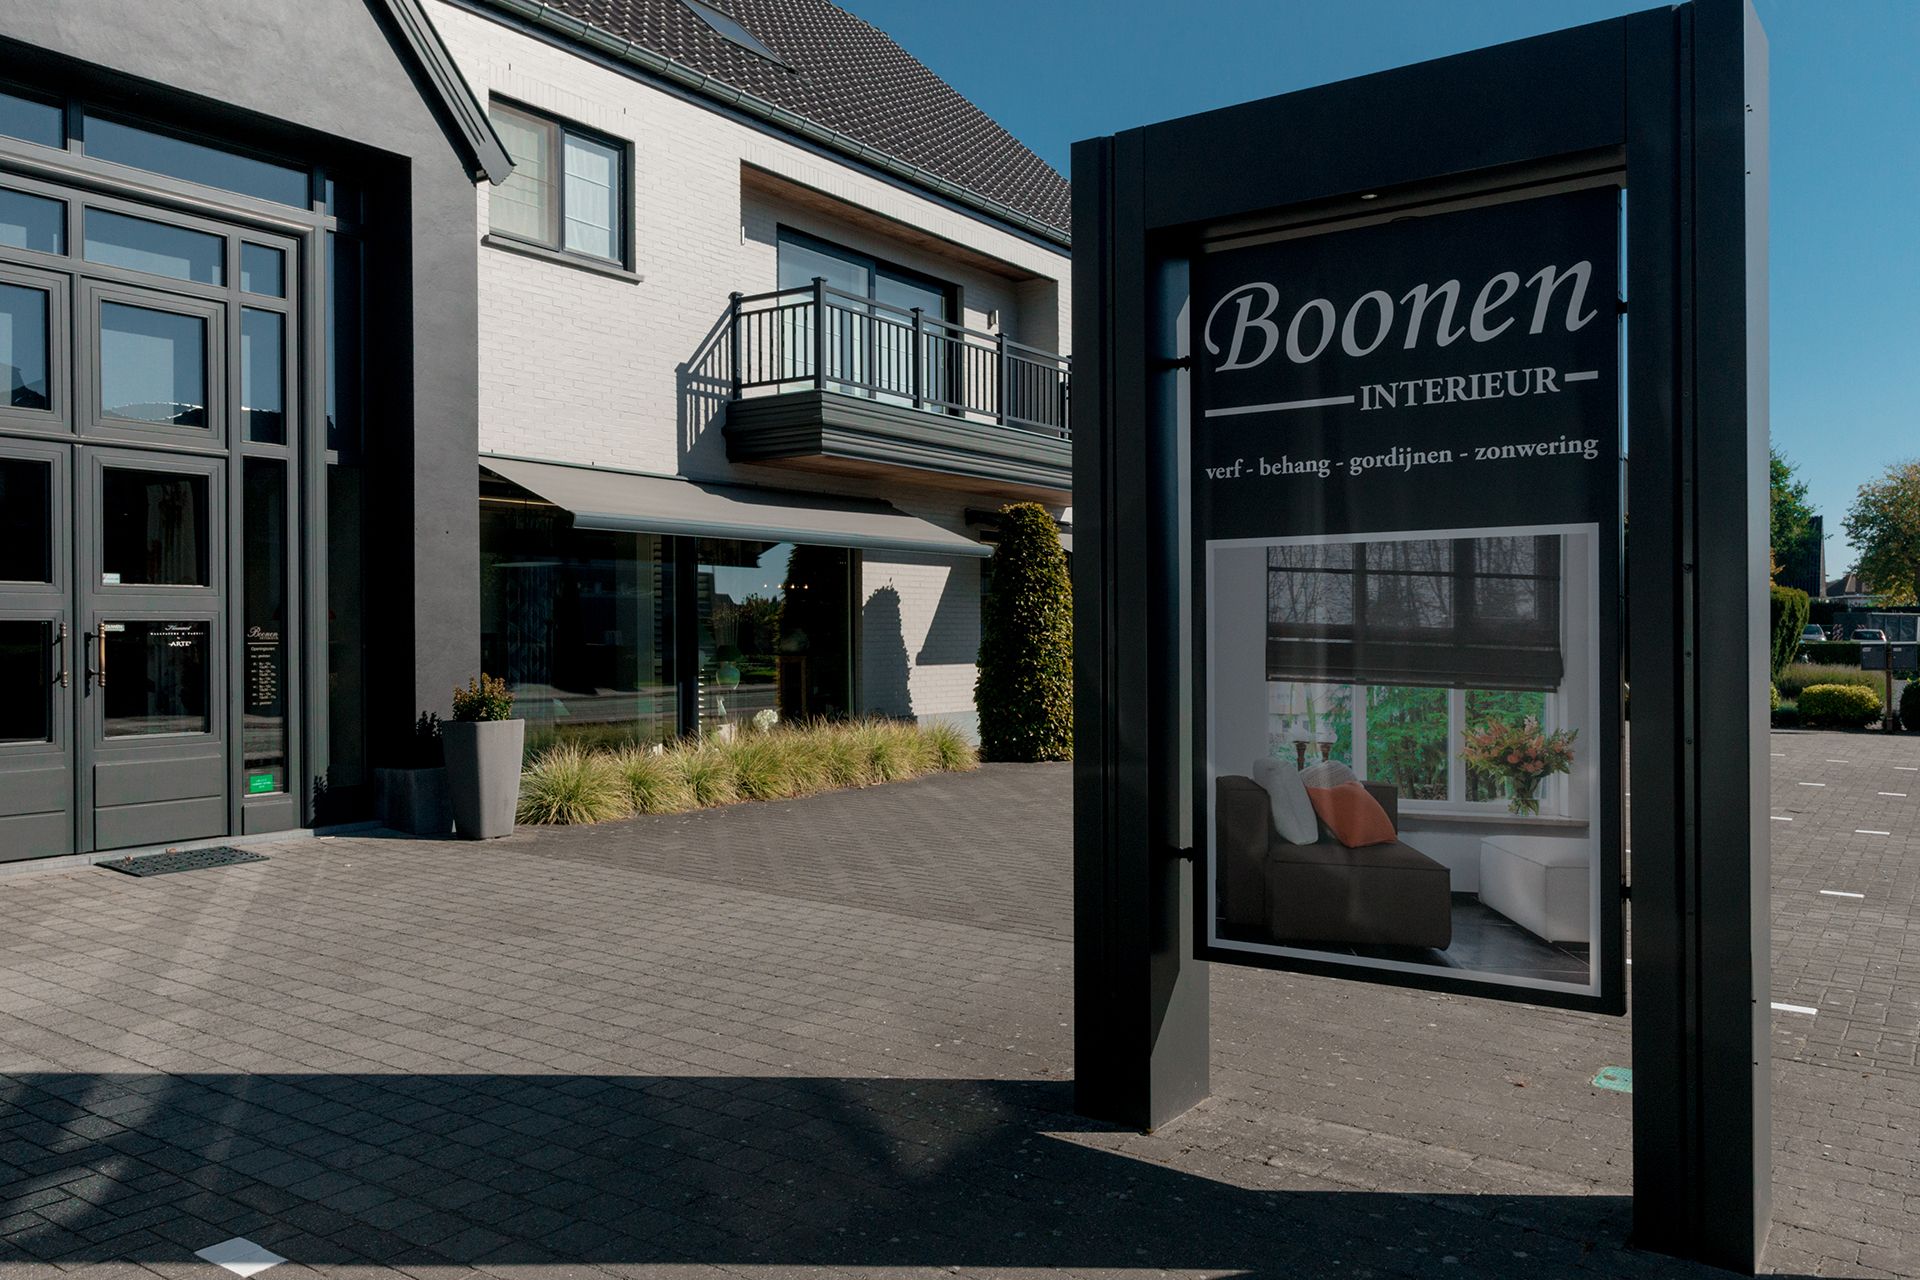 Boonen Interieur: verf - behang - gordijnen - zonwering